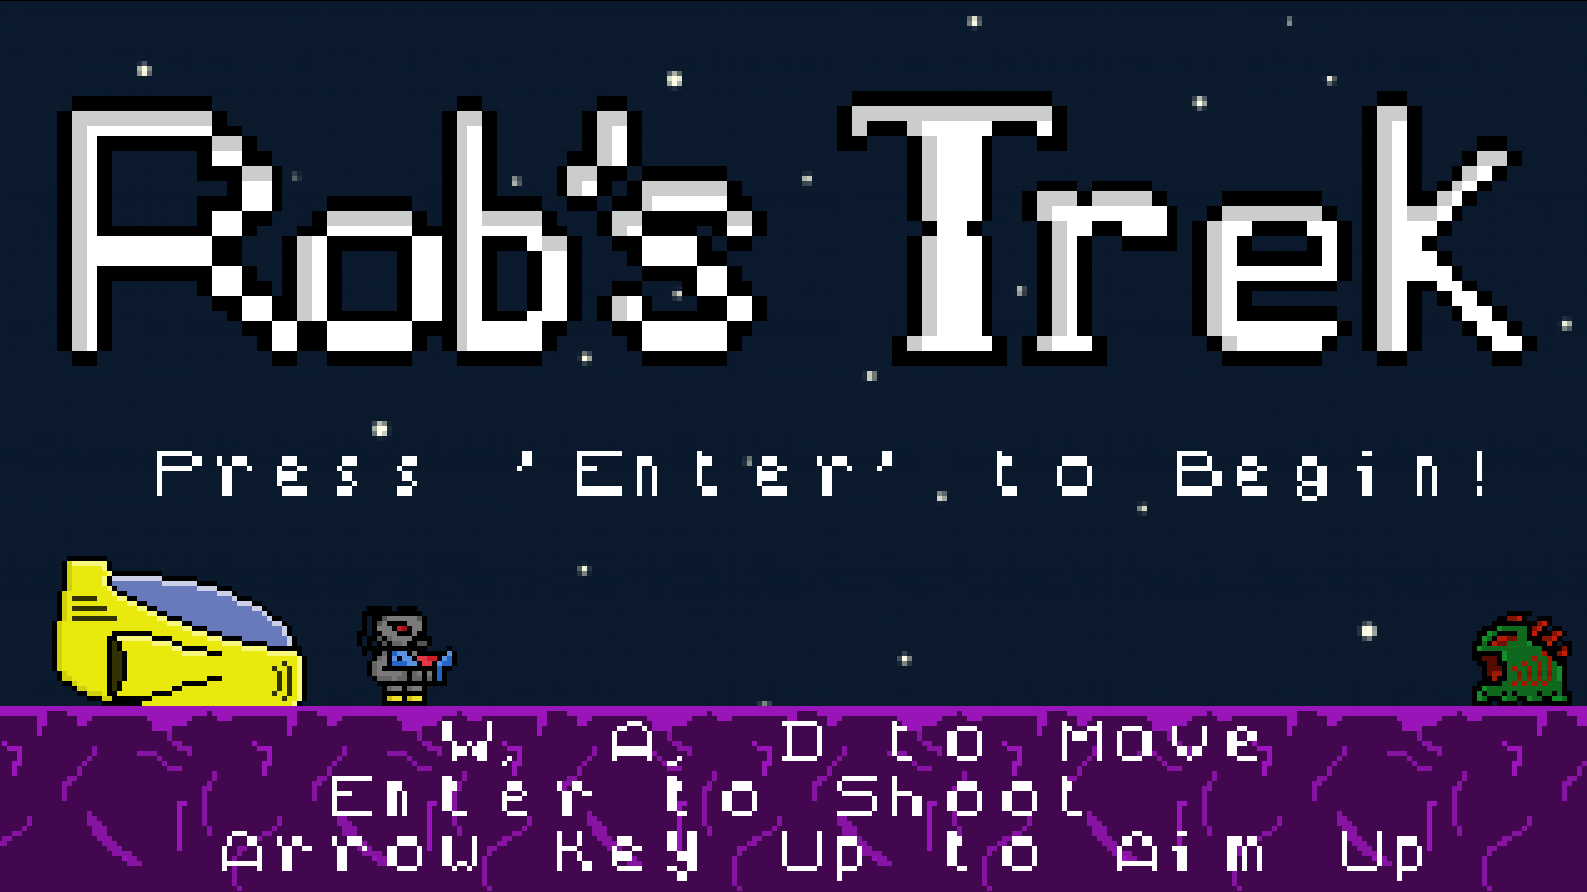 robs-trek-header